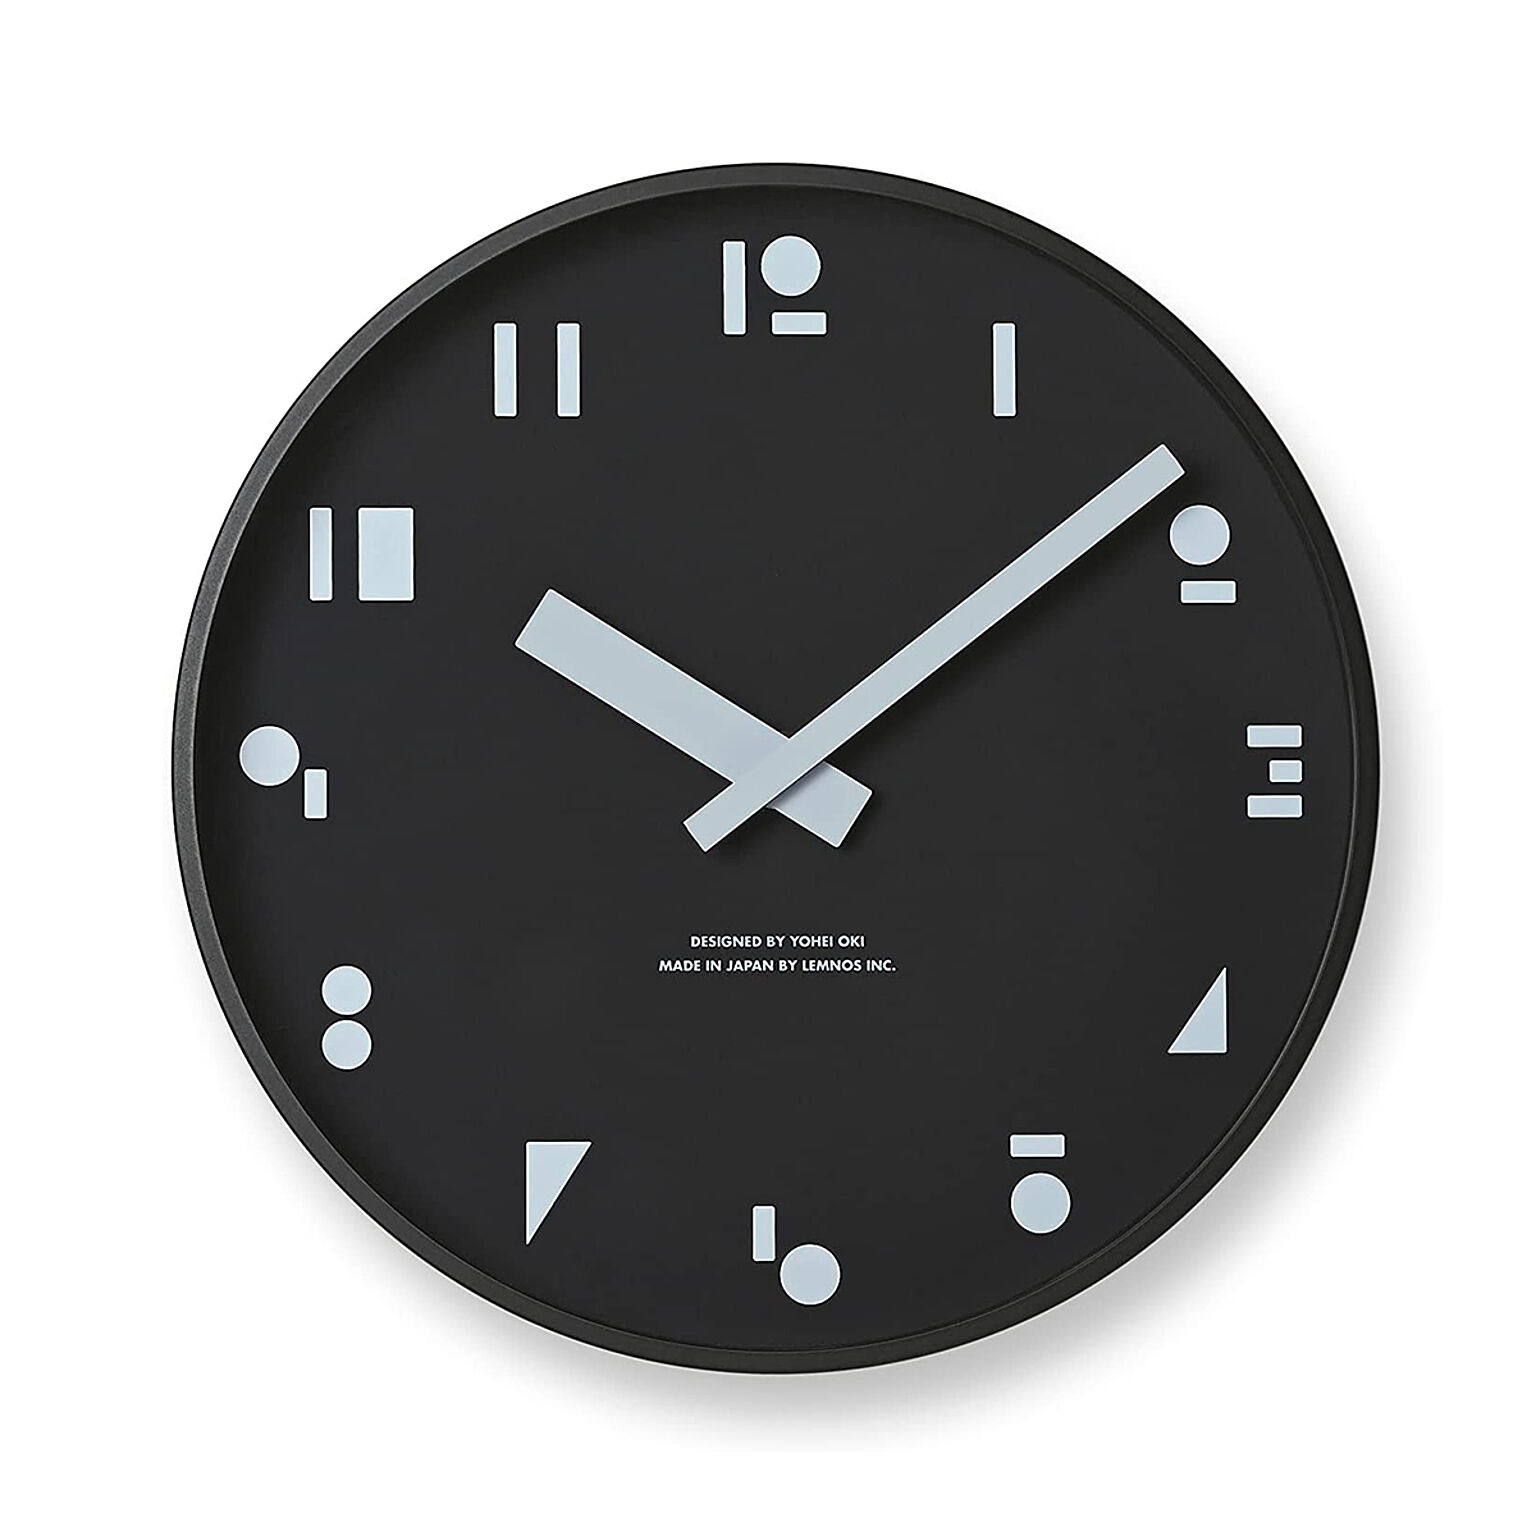 置き時計 卓上時計 おしゃれ 北欧 時計 モダン テーブルクロック M,S,S. エムエスエス MSS シンプル 掛け時計 SYO21-04 アルミ グレー ブラック 黒 モノトーン リビング 書斎 